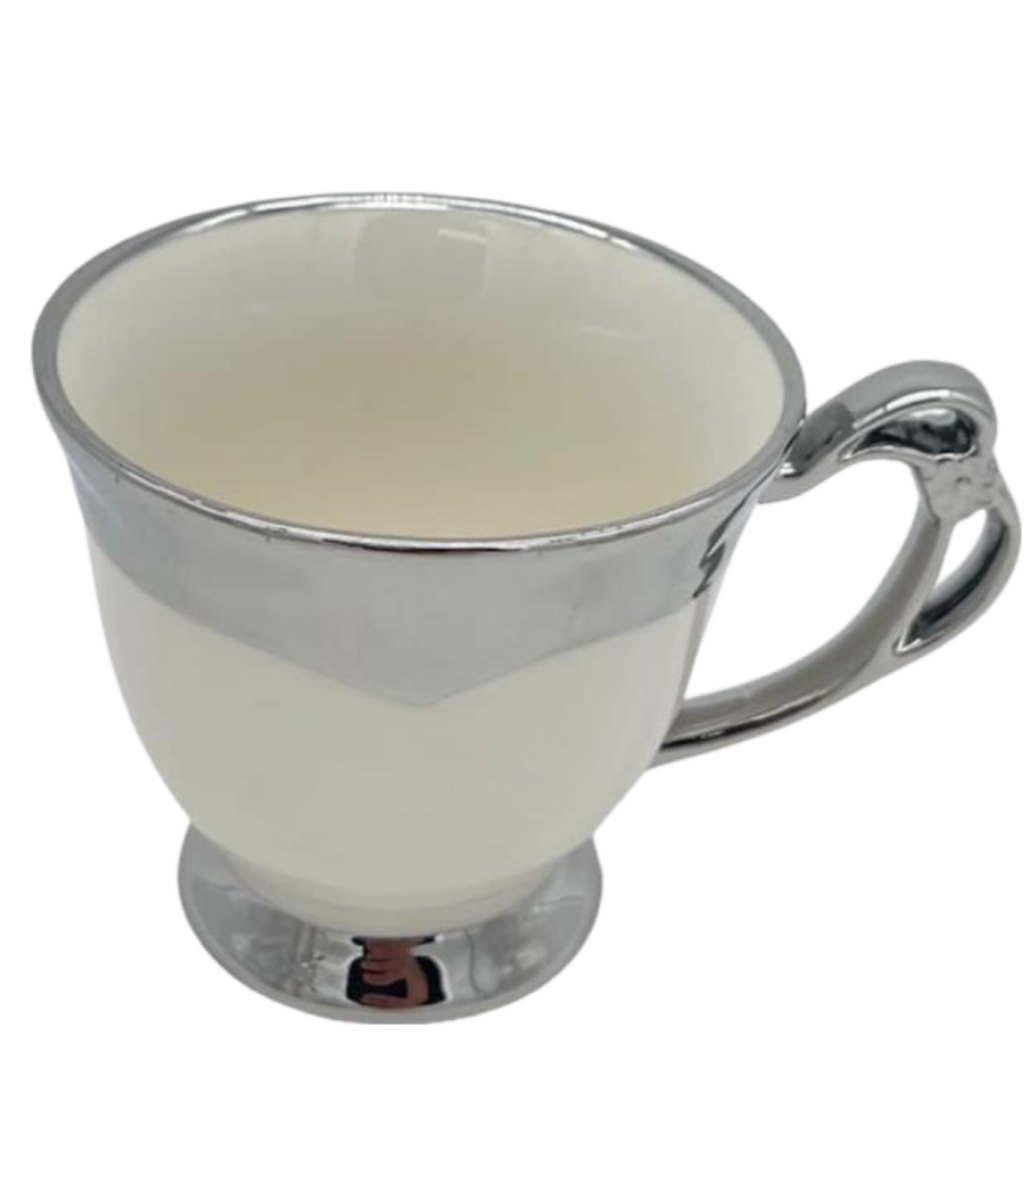 servicio de té/café con bandeja de porcelana